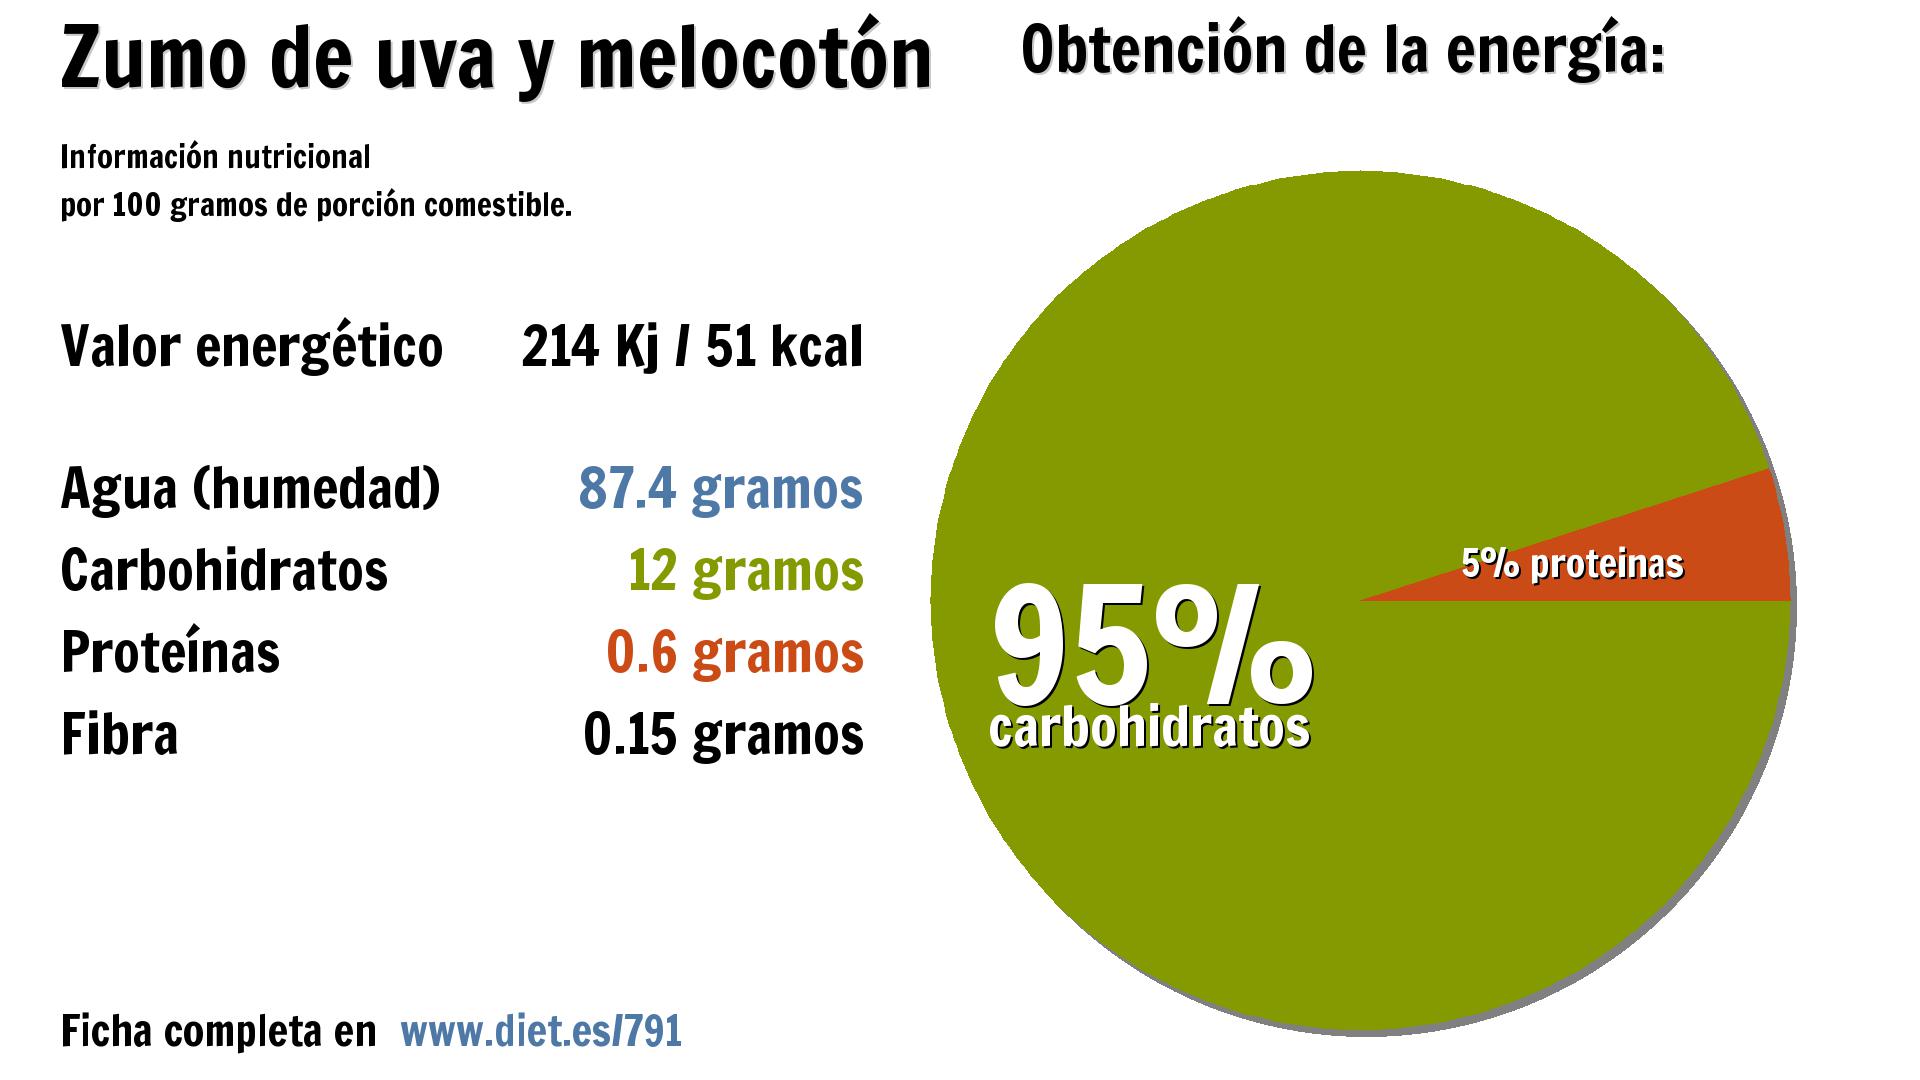 Zumo de uva y melocotón: energía 214 Kj, agua 87 g., carbohidratos 12 g. y proteínas 1 g.